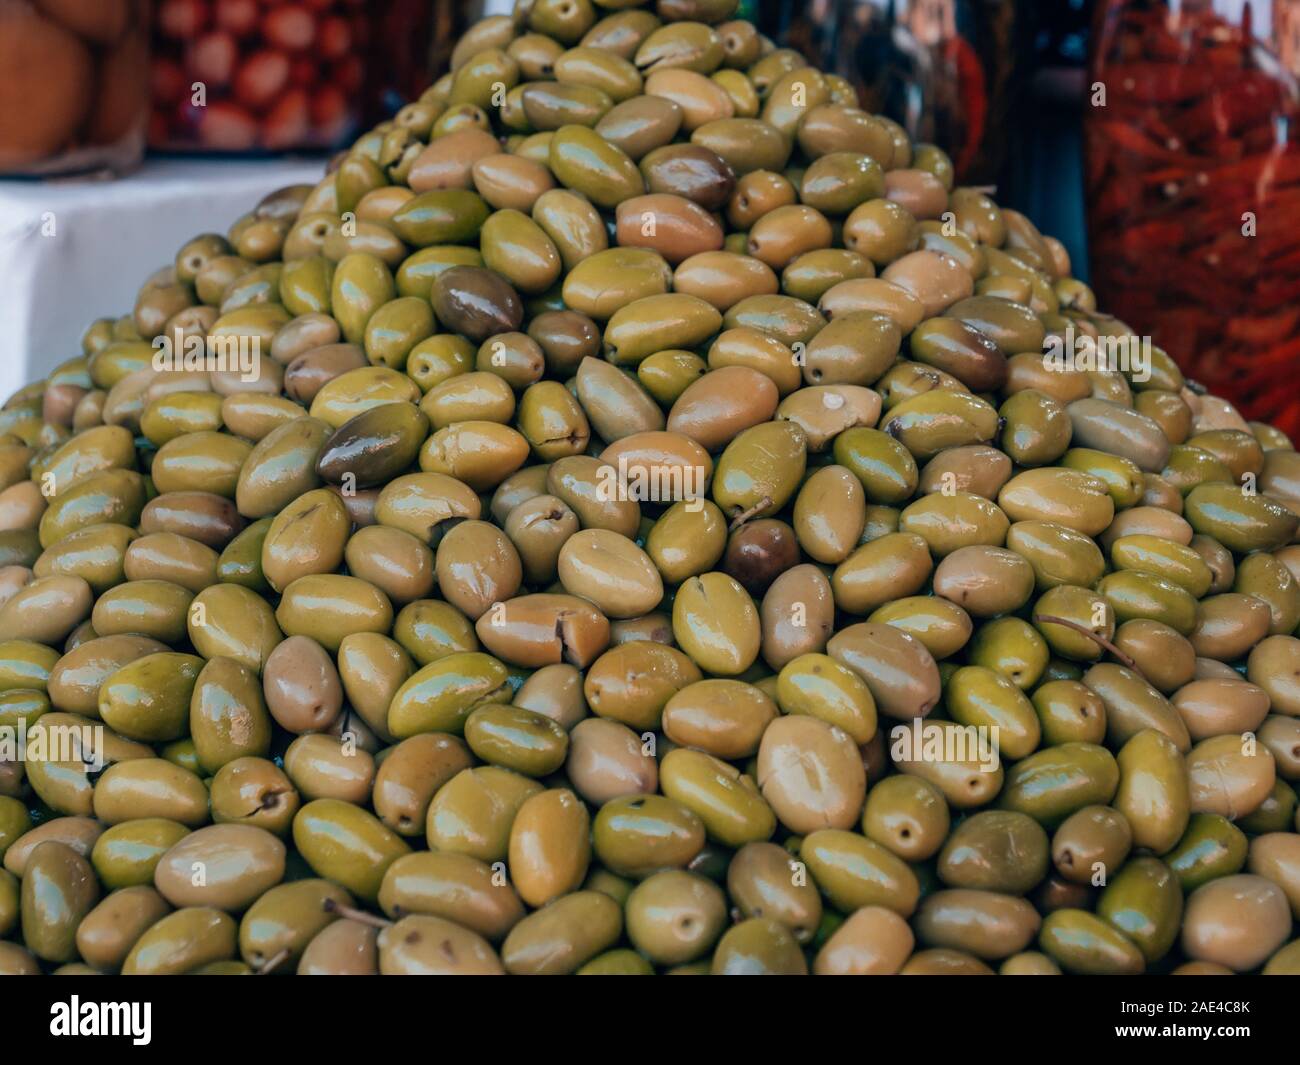 Olives Stock Photo